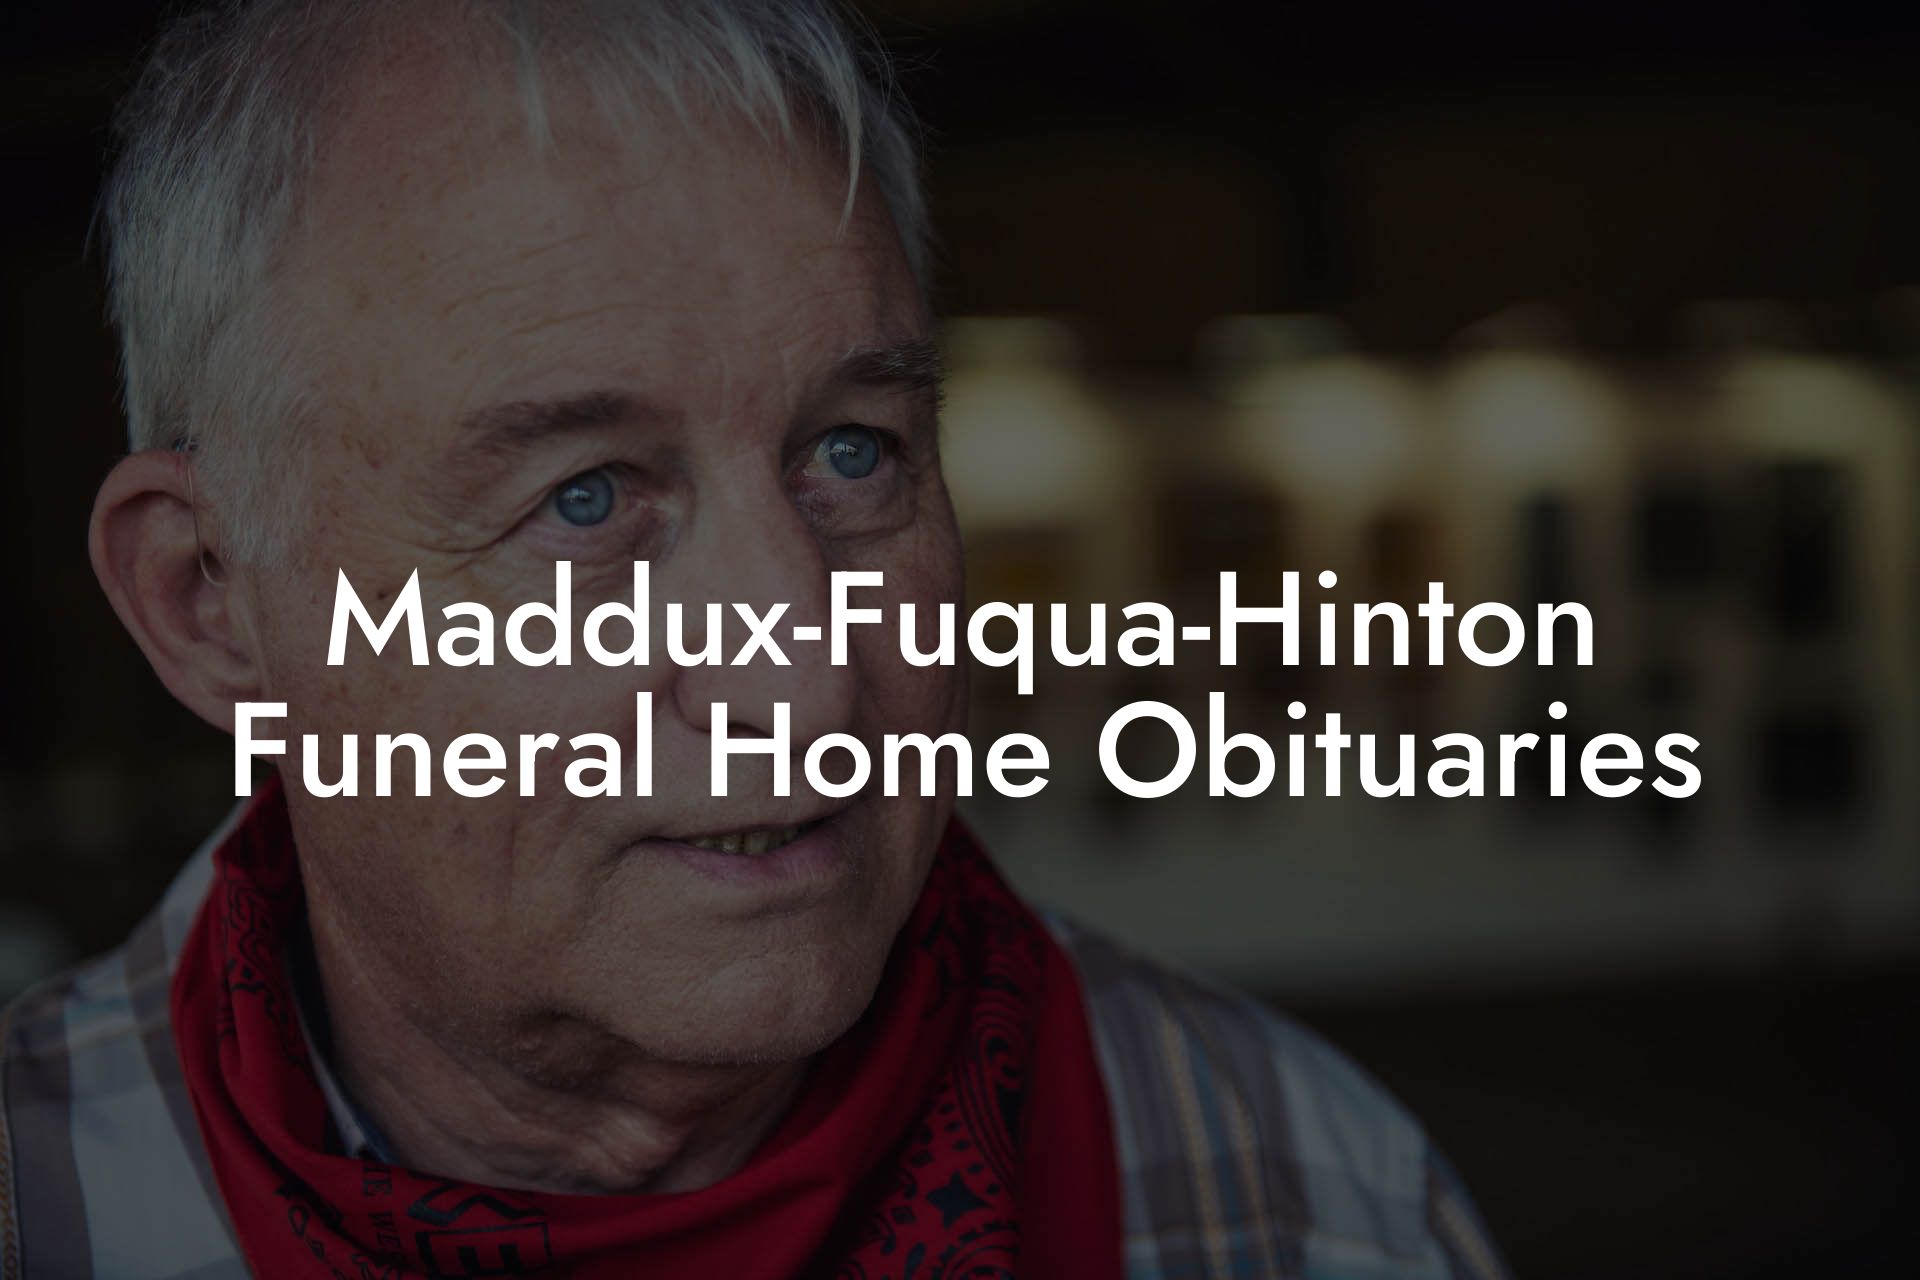 Maddux-Fuqua-Hinton Funeral Home Obituaries